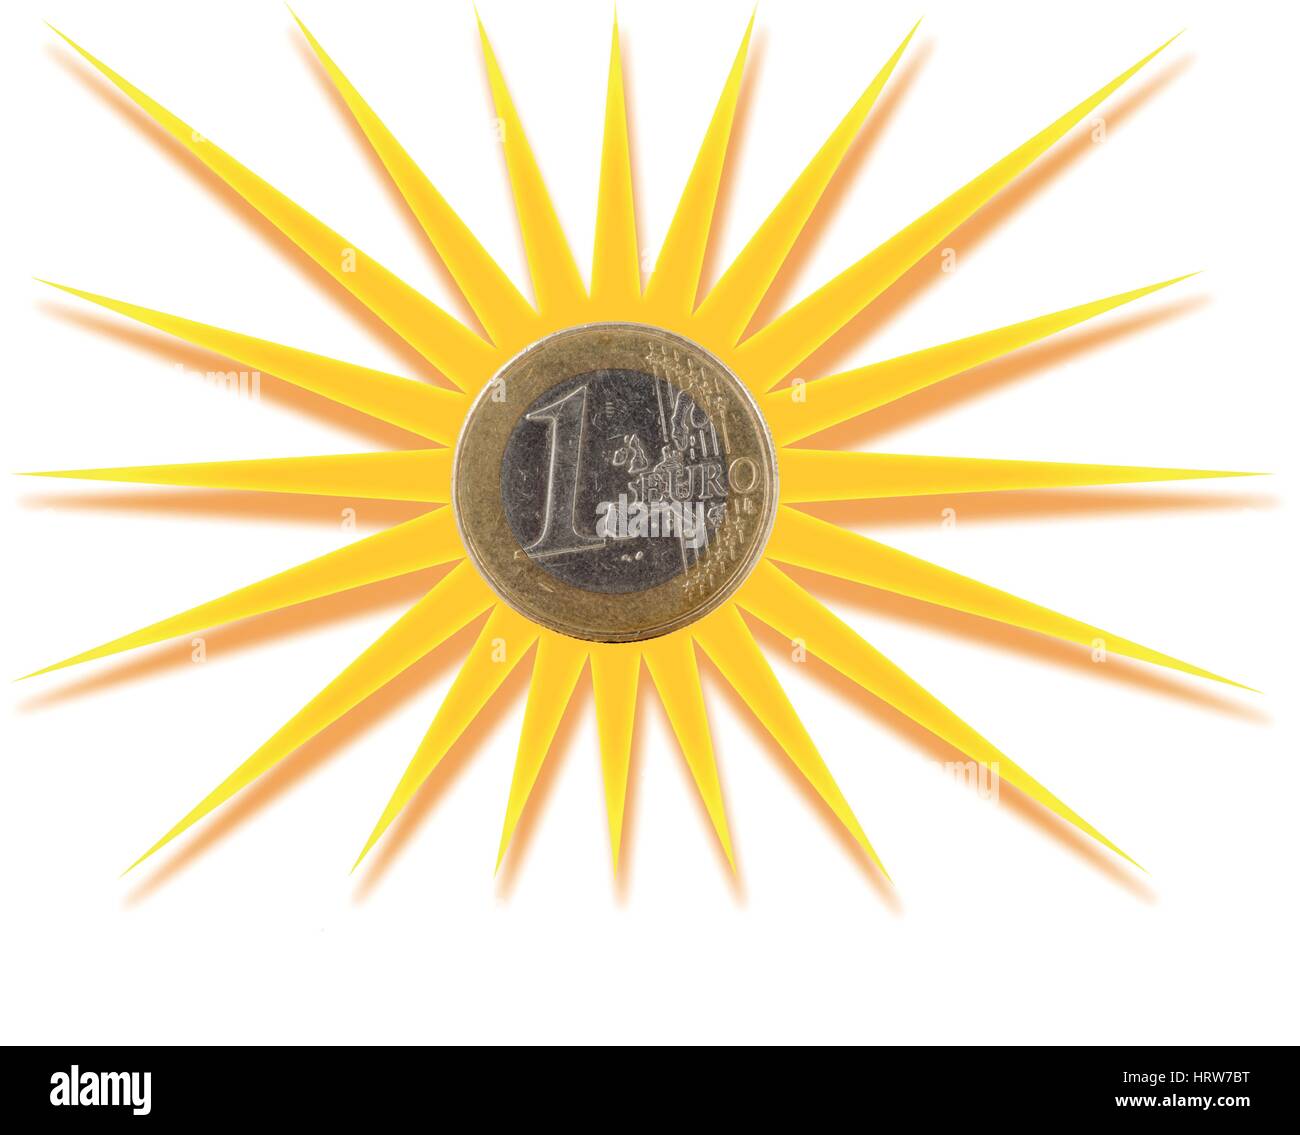 Euro coin inscribed in golden sun symbol Stock Vector